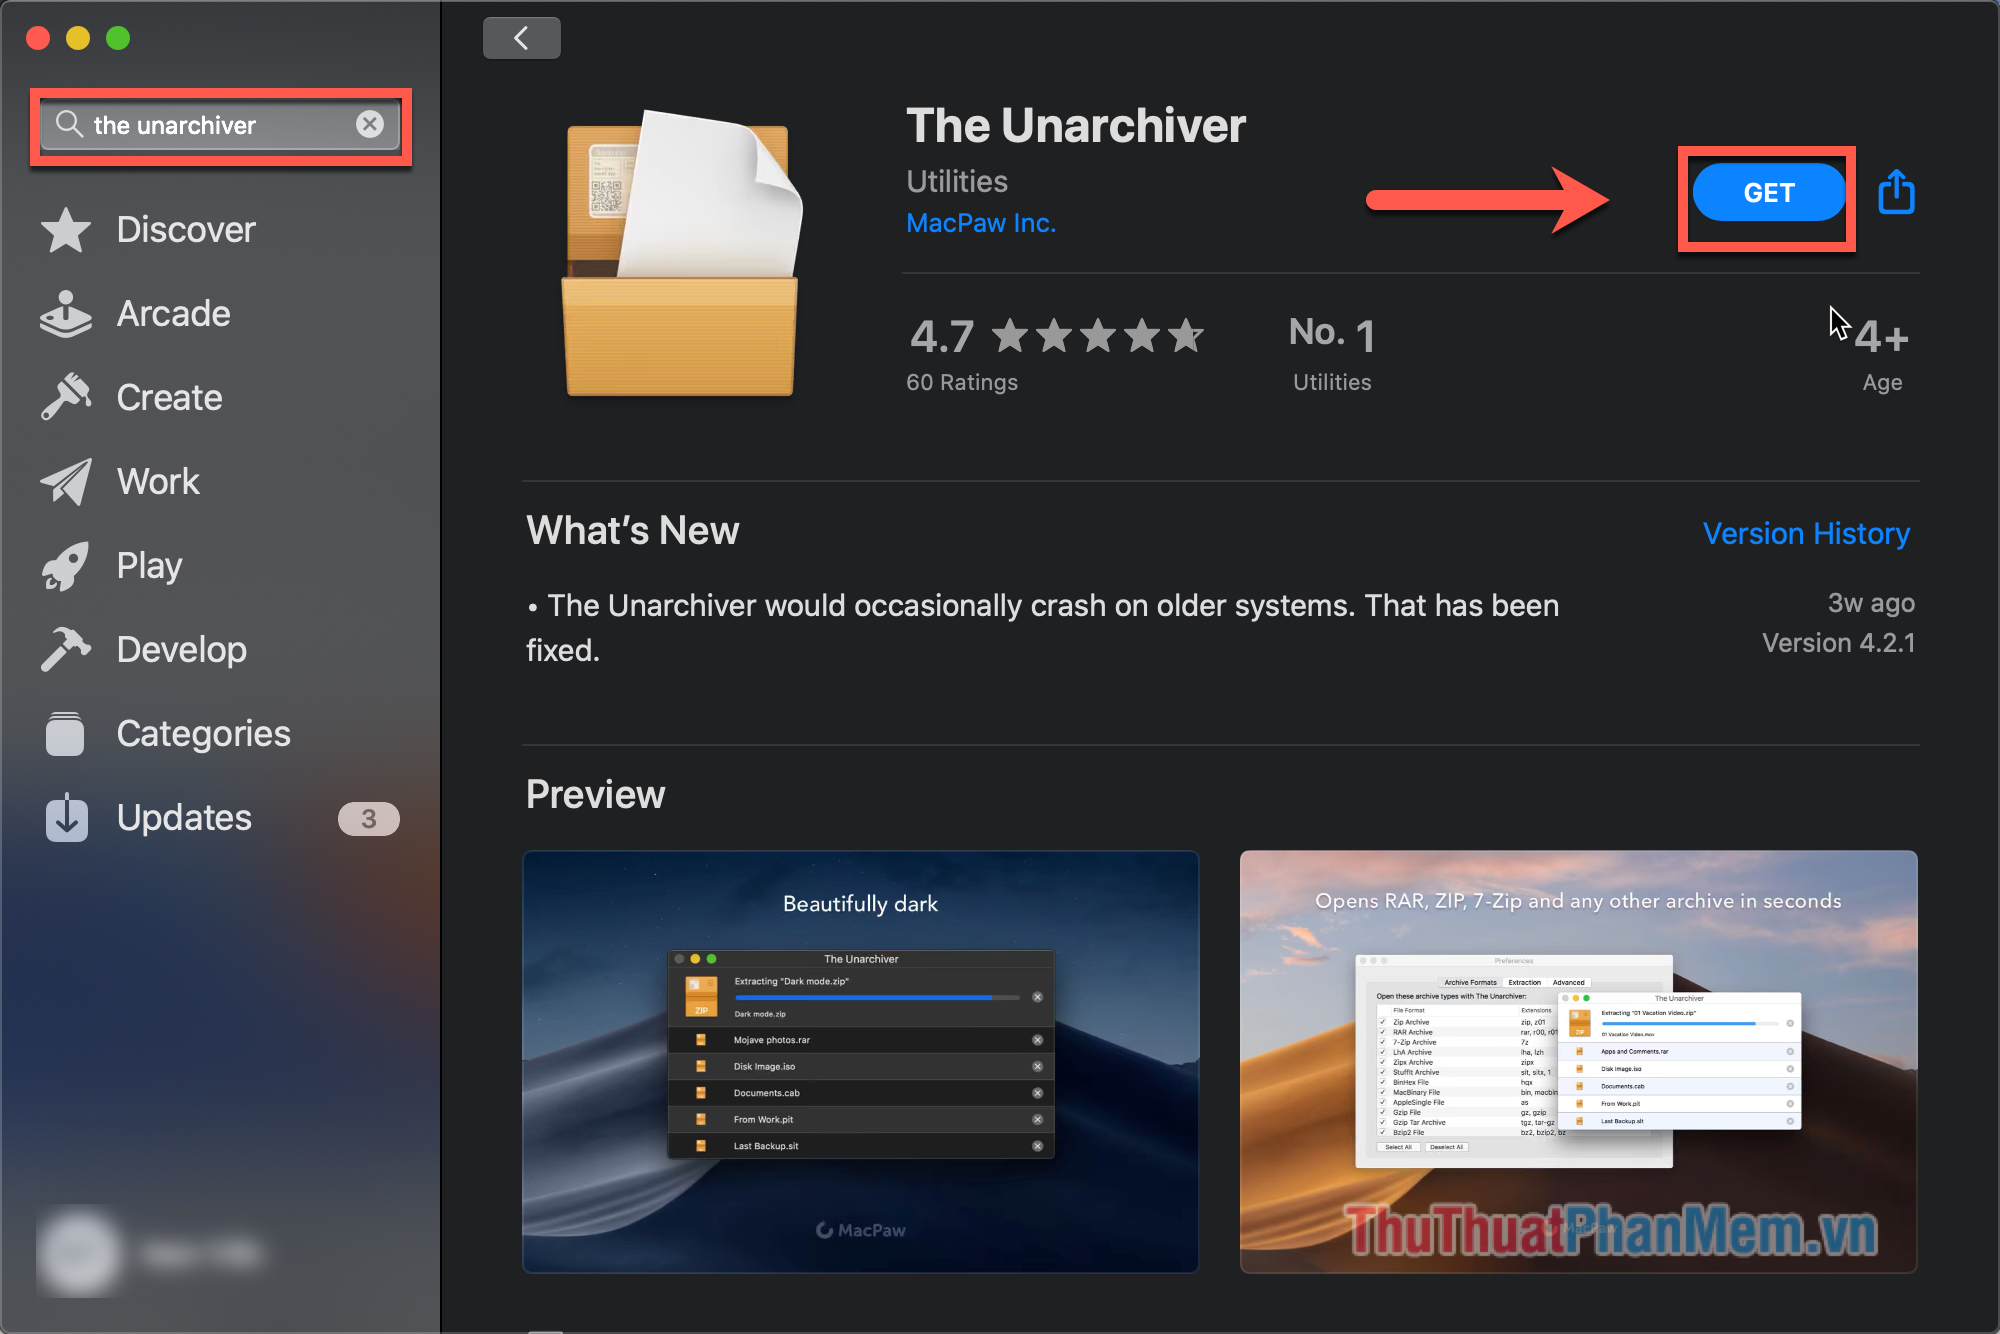 Bạn mở Appstore, nhập tìm kiếm The Unarchiver và nhấn Get để tải xuống ứng dụng